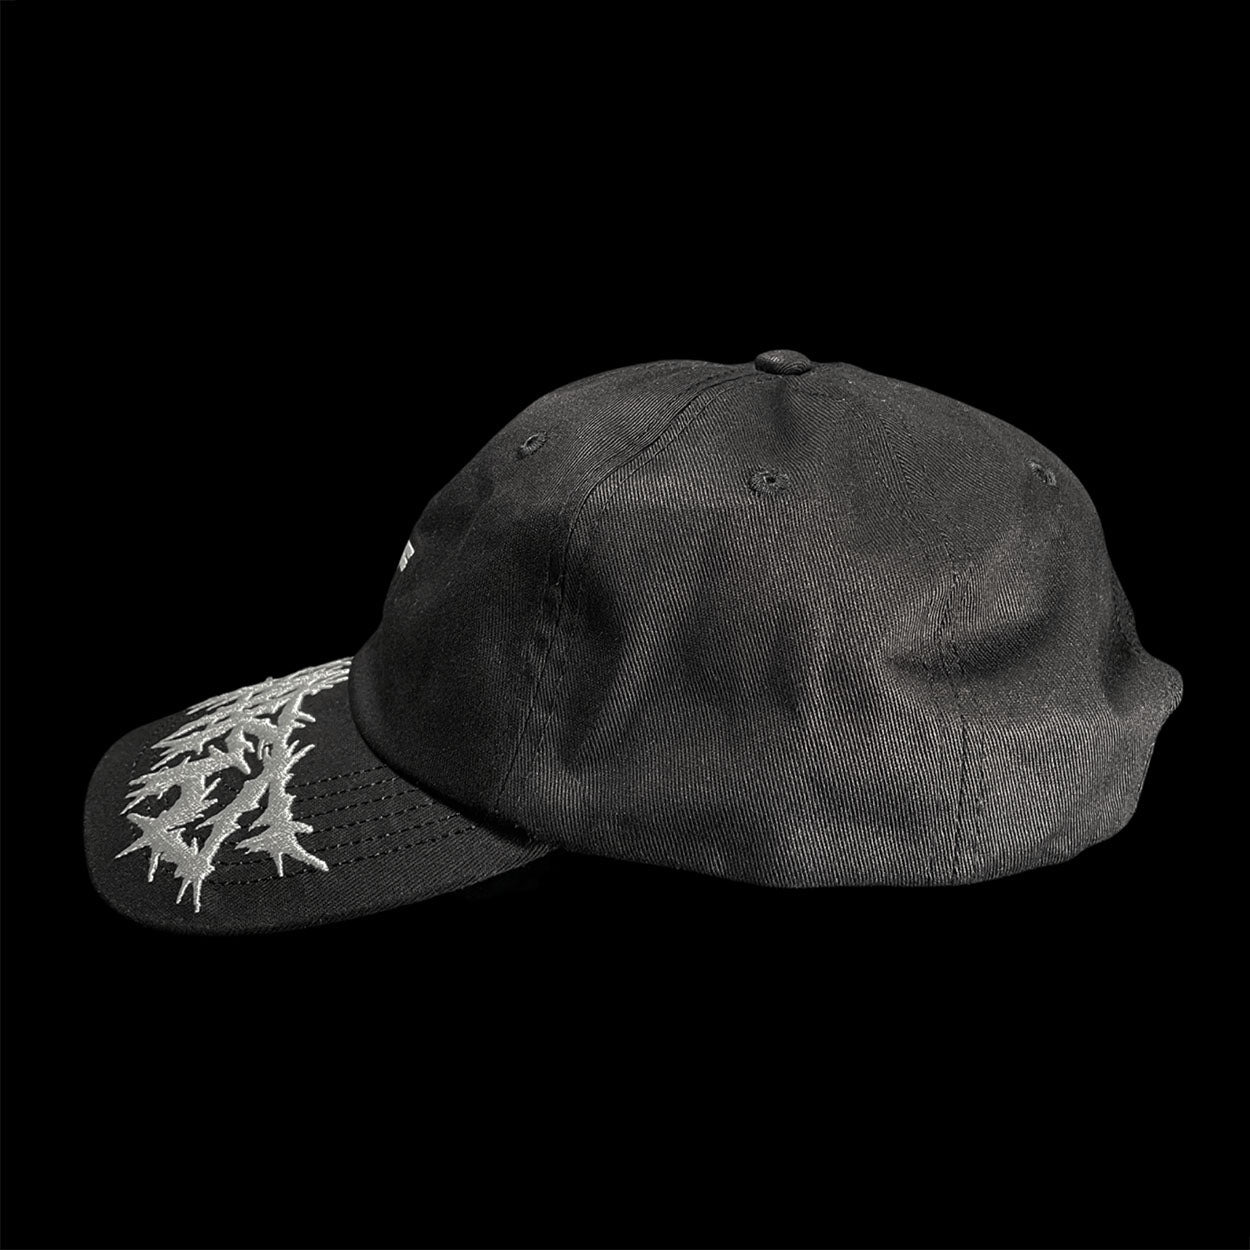 Berlin Hat